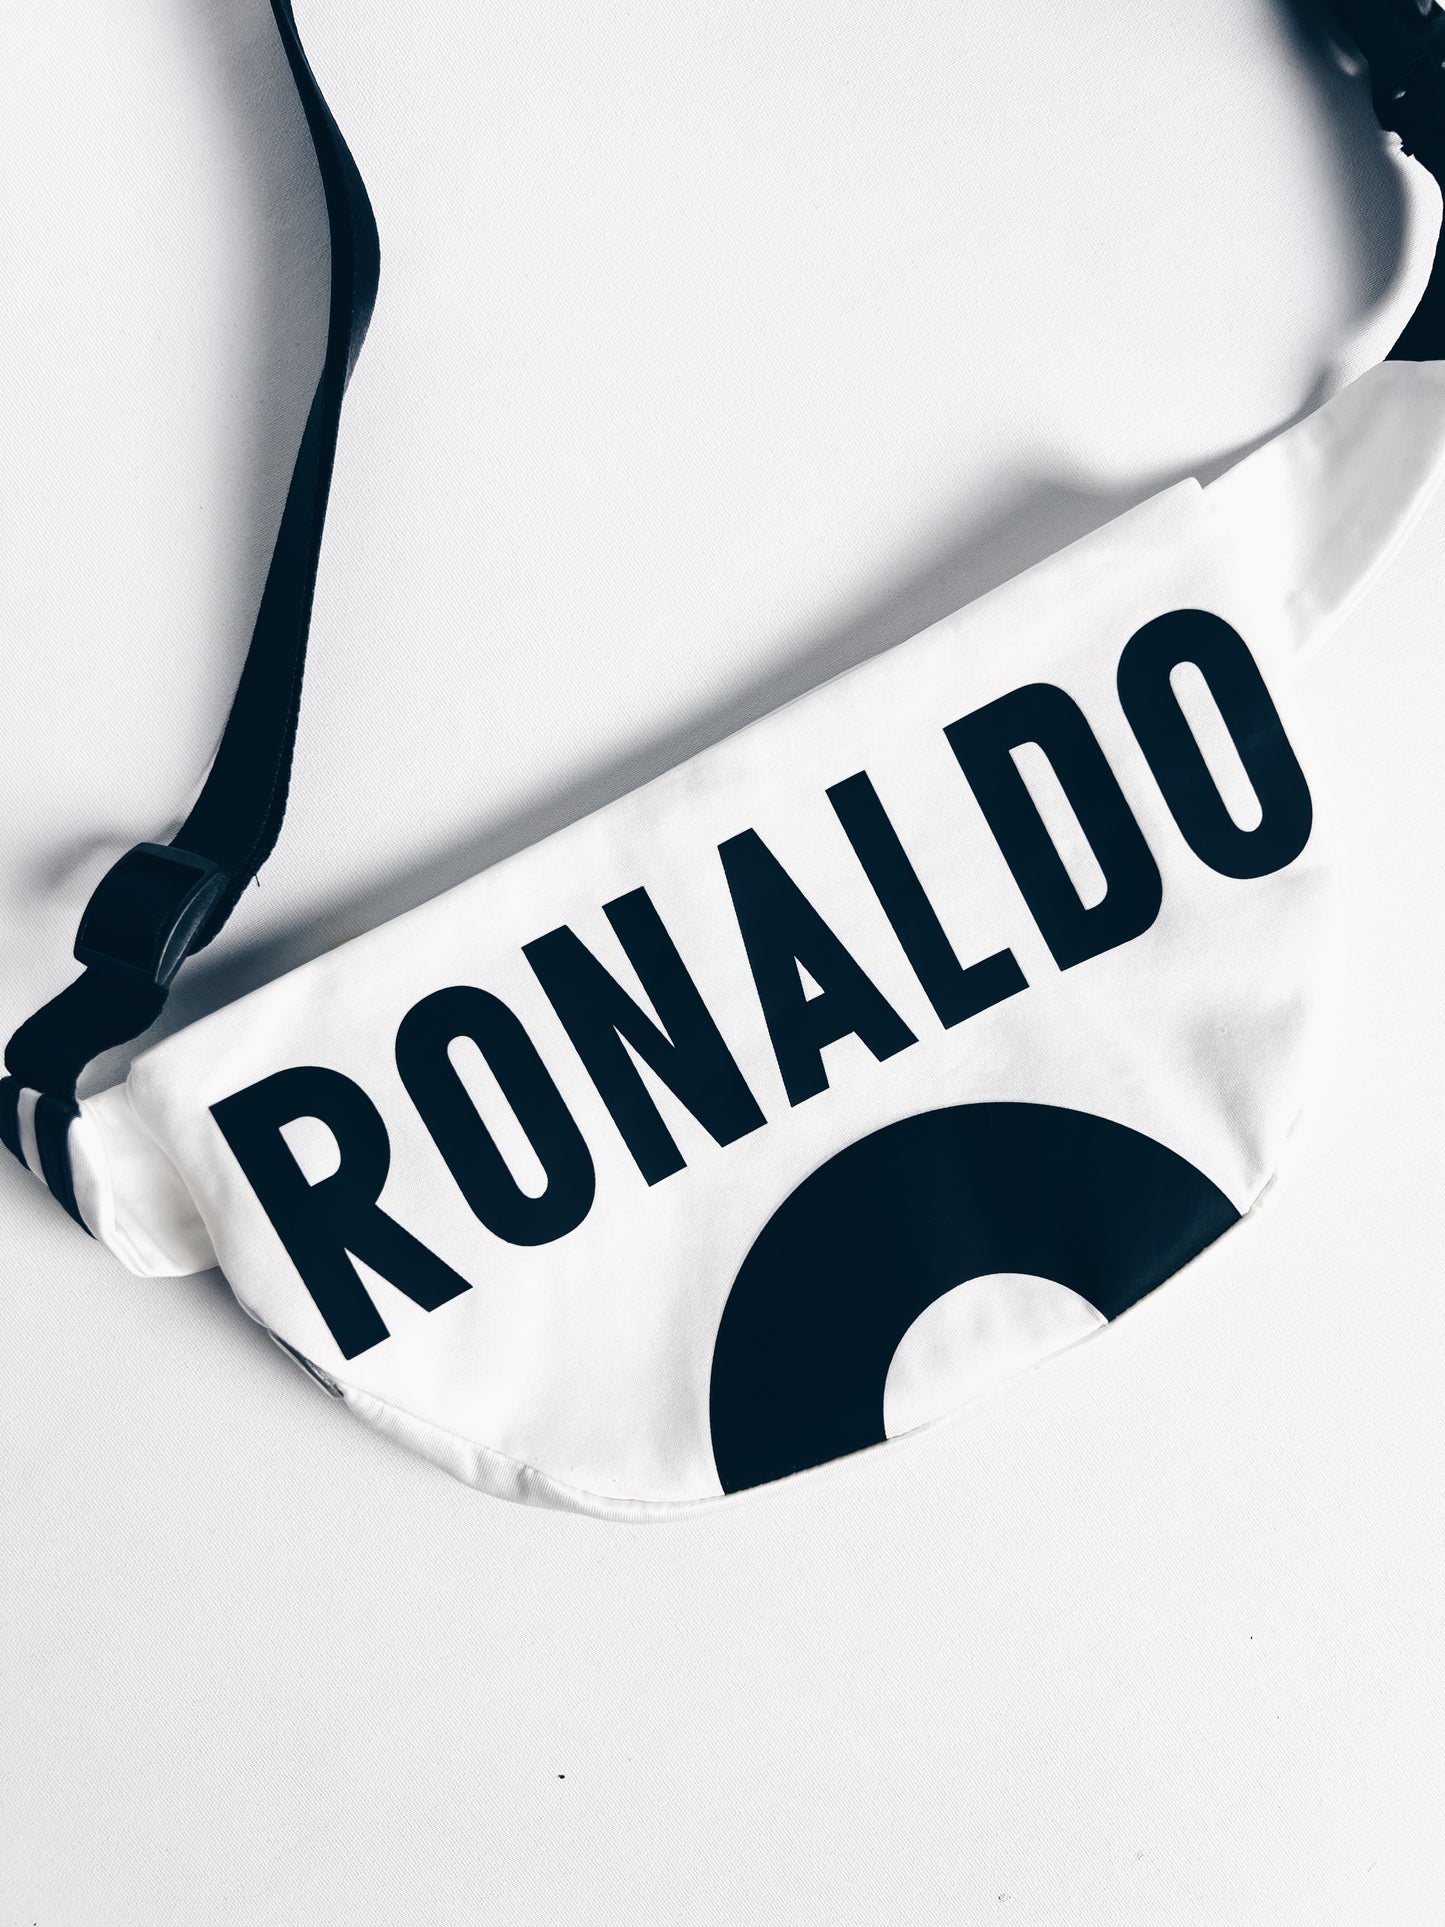 Real Madrid Ronaldo Bum Bag